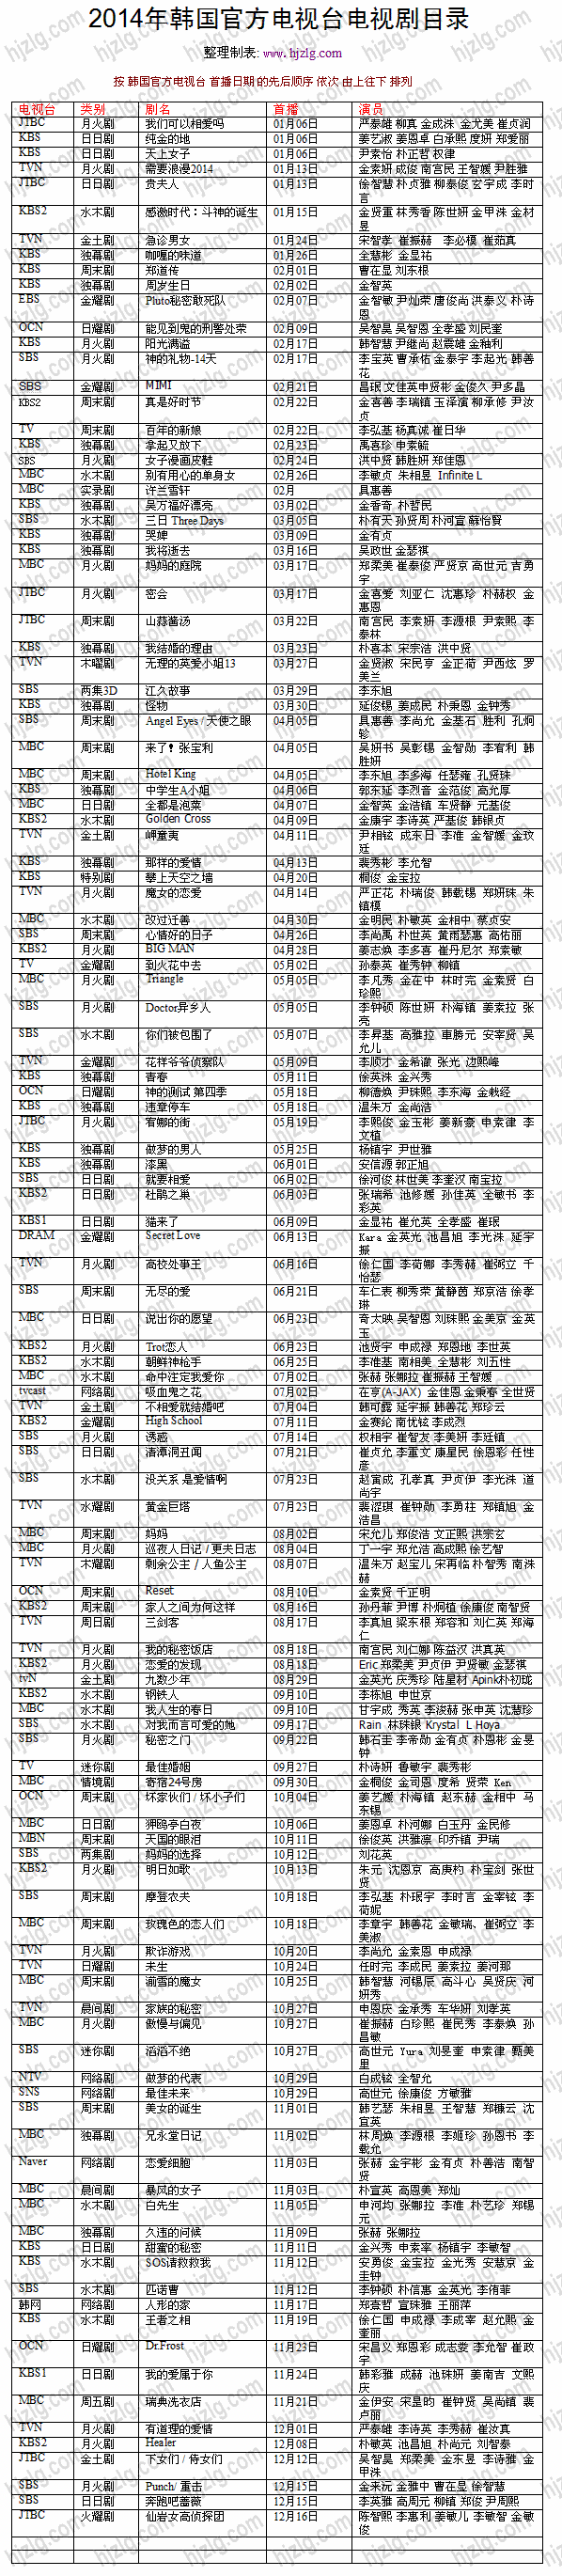 2014 年韩国官方电视剧目录